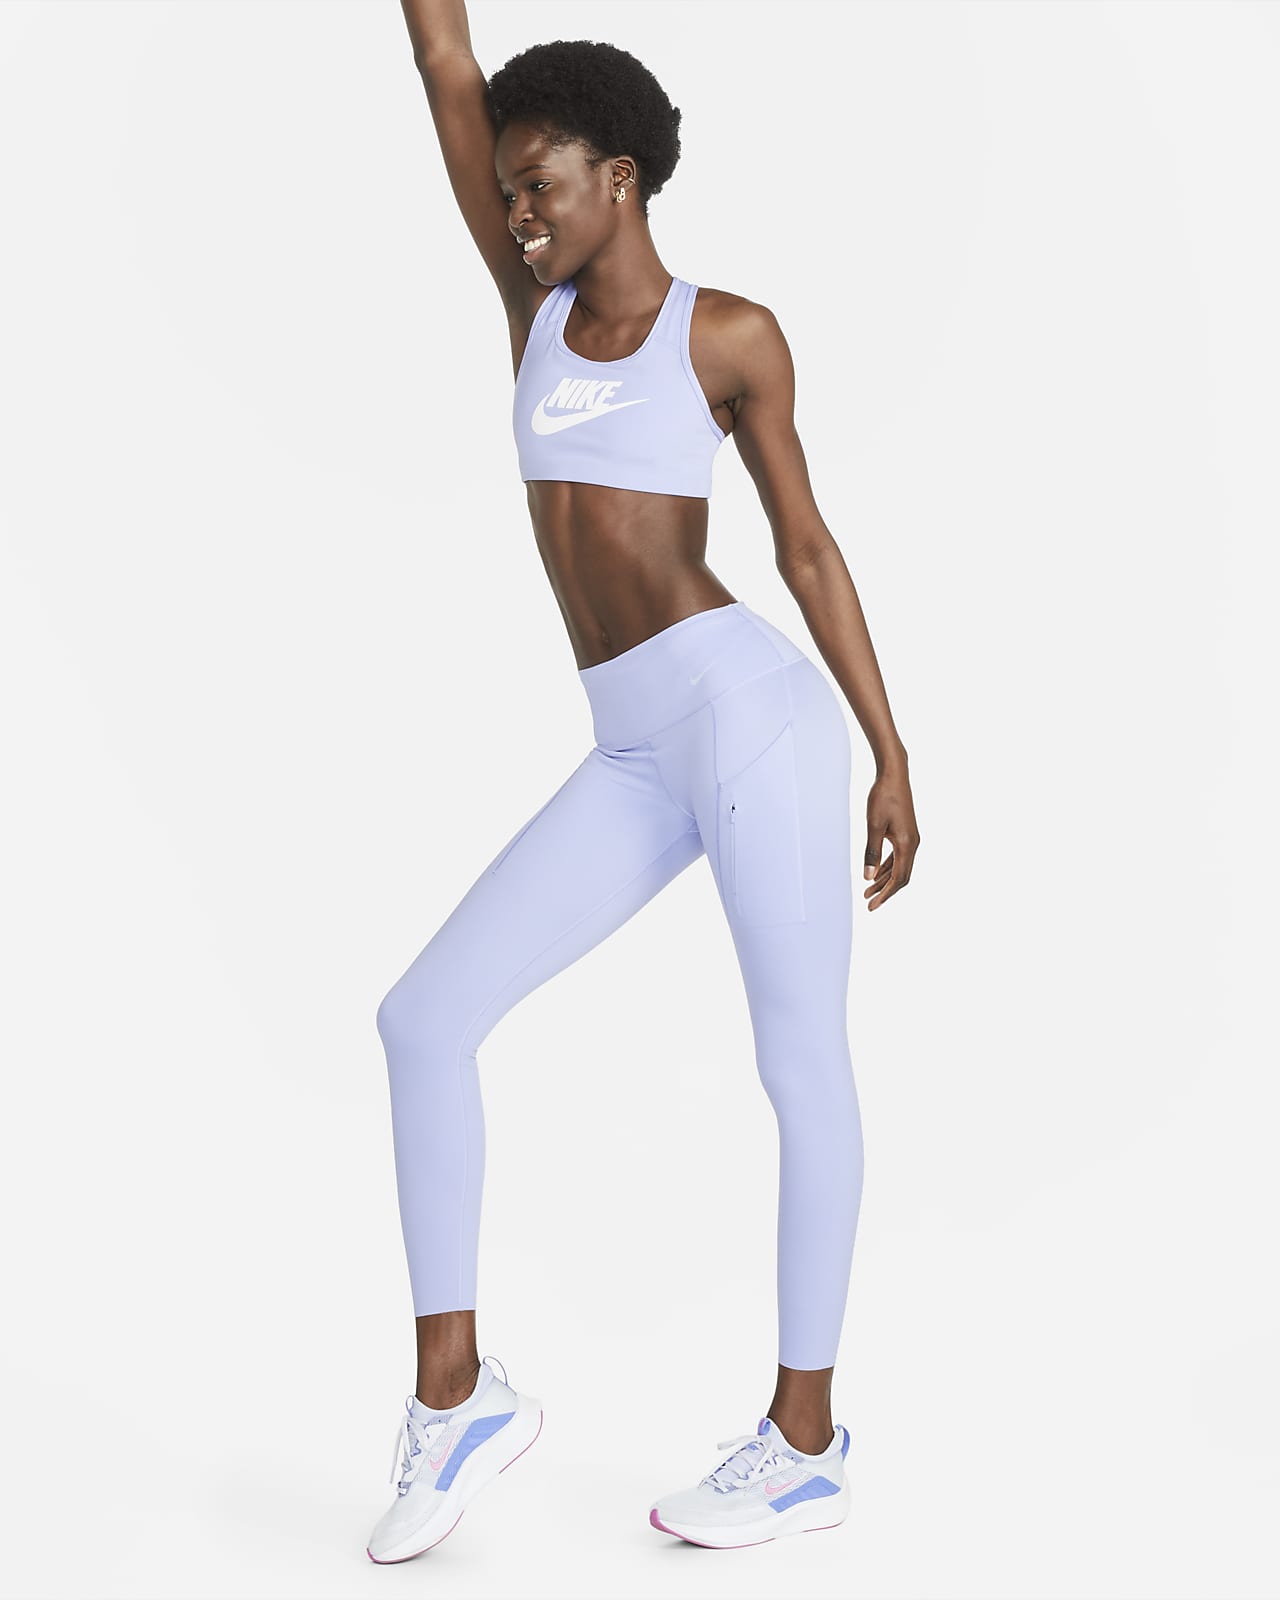 Legging 7/8 taille mi-haute à maintien supérieur avec poches Nike Go pour femme